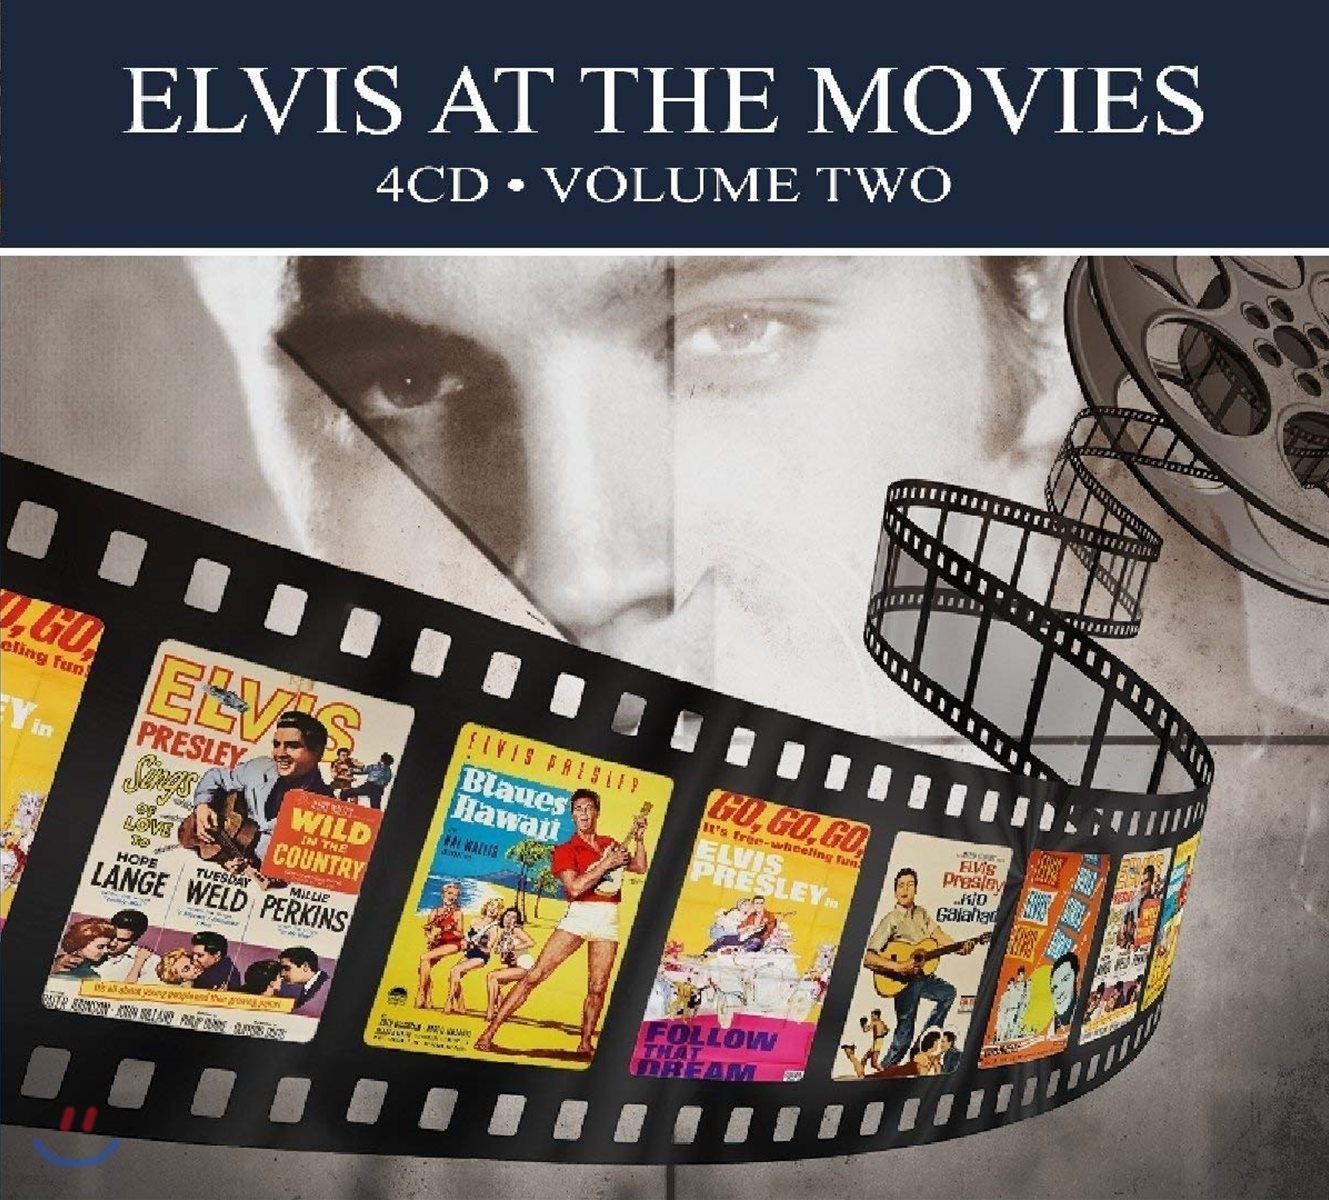 Elvis Presley - Elvis at the Movies Vol. 2 영화 속 엘비스 프레슬리 음악 모음집